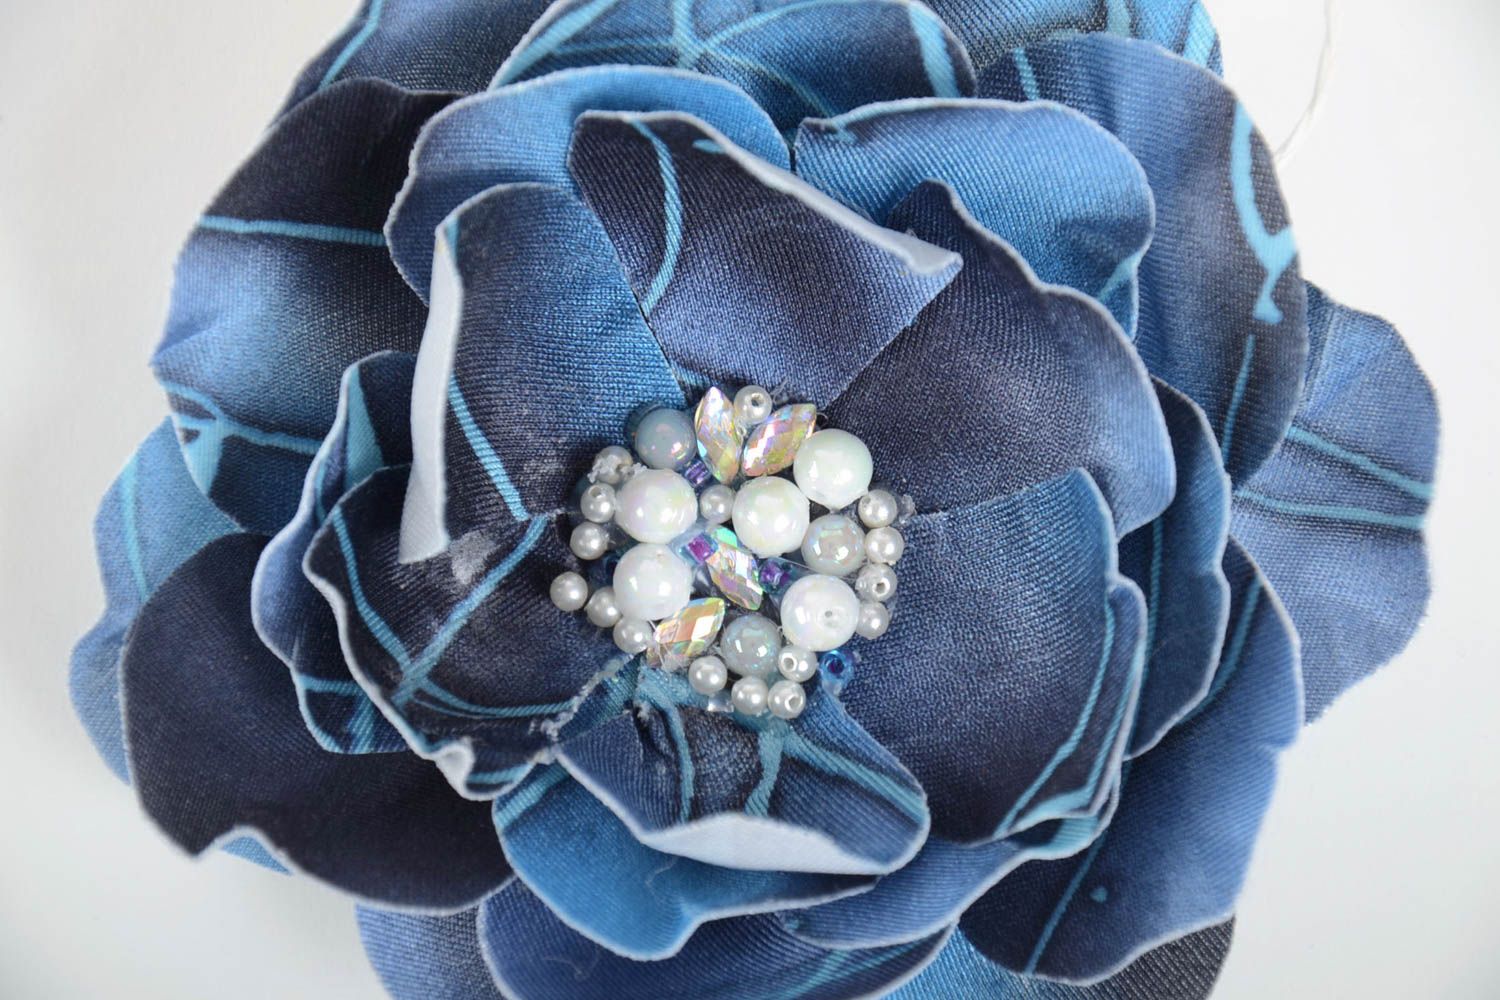 Брошь цветок из ткани синяя с бусинами красивая крупная стильная ручной работы фото 4